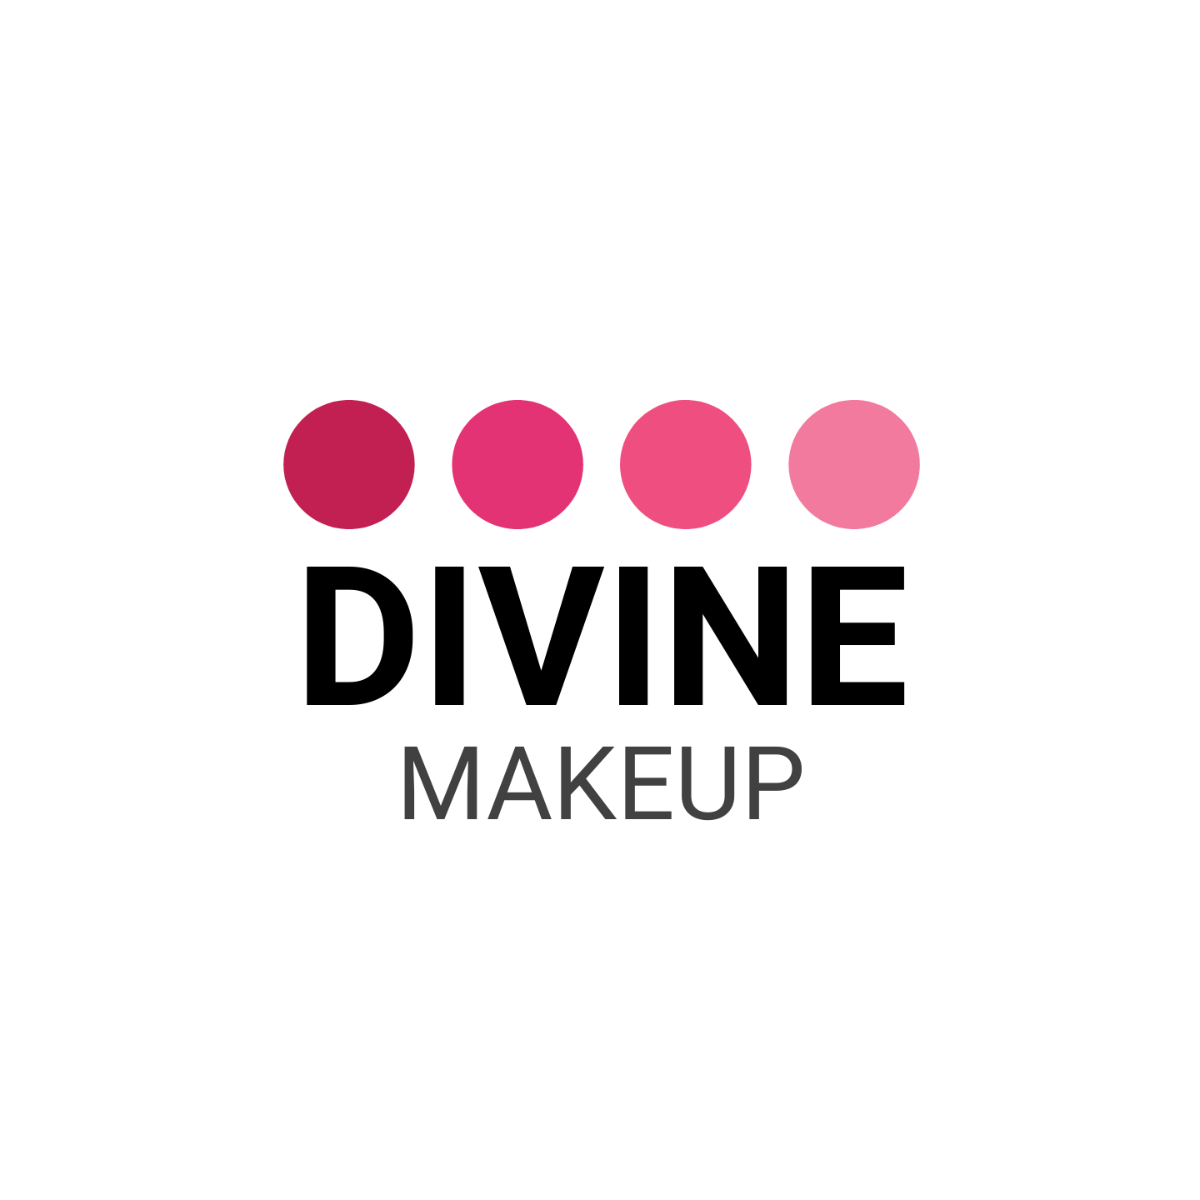 Makeup Artist logo-Design Template